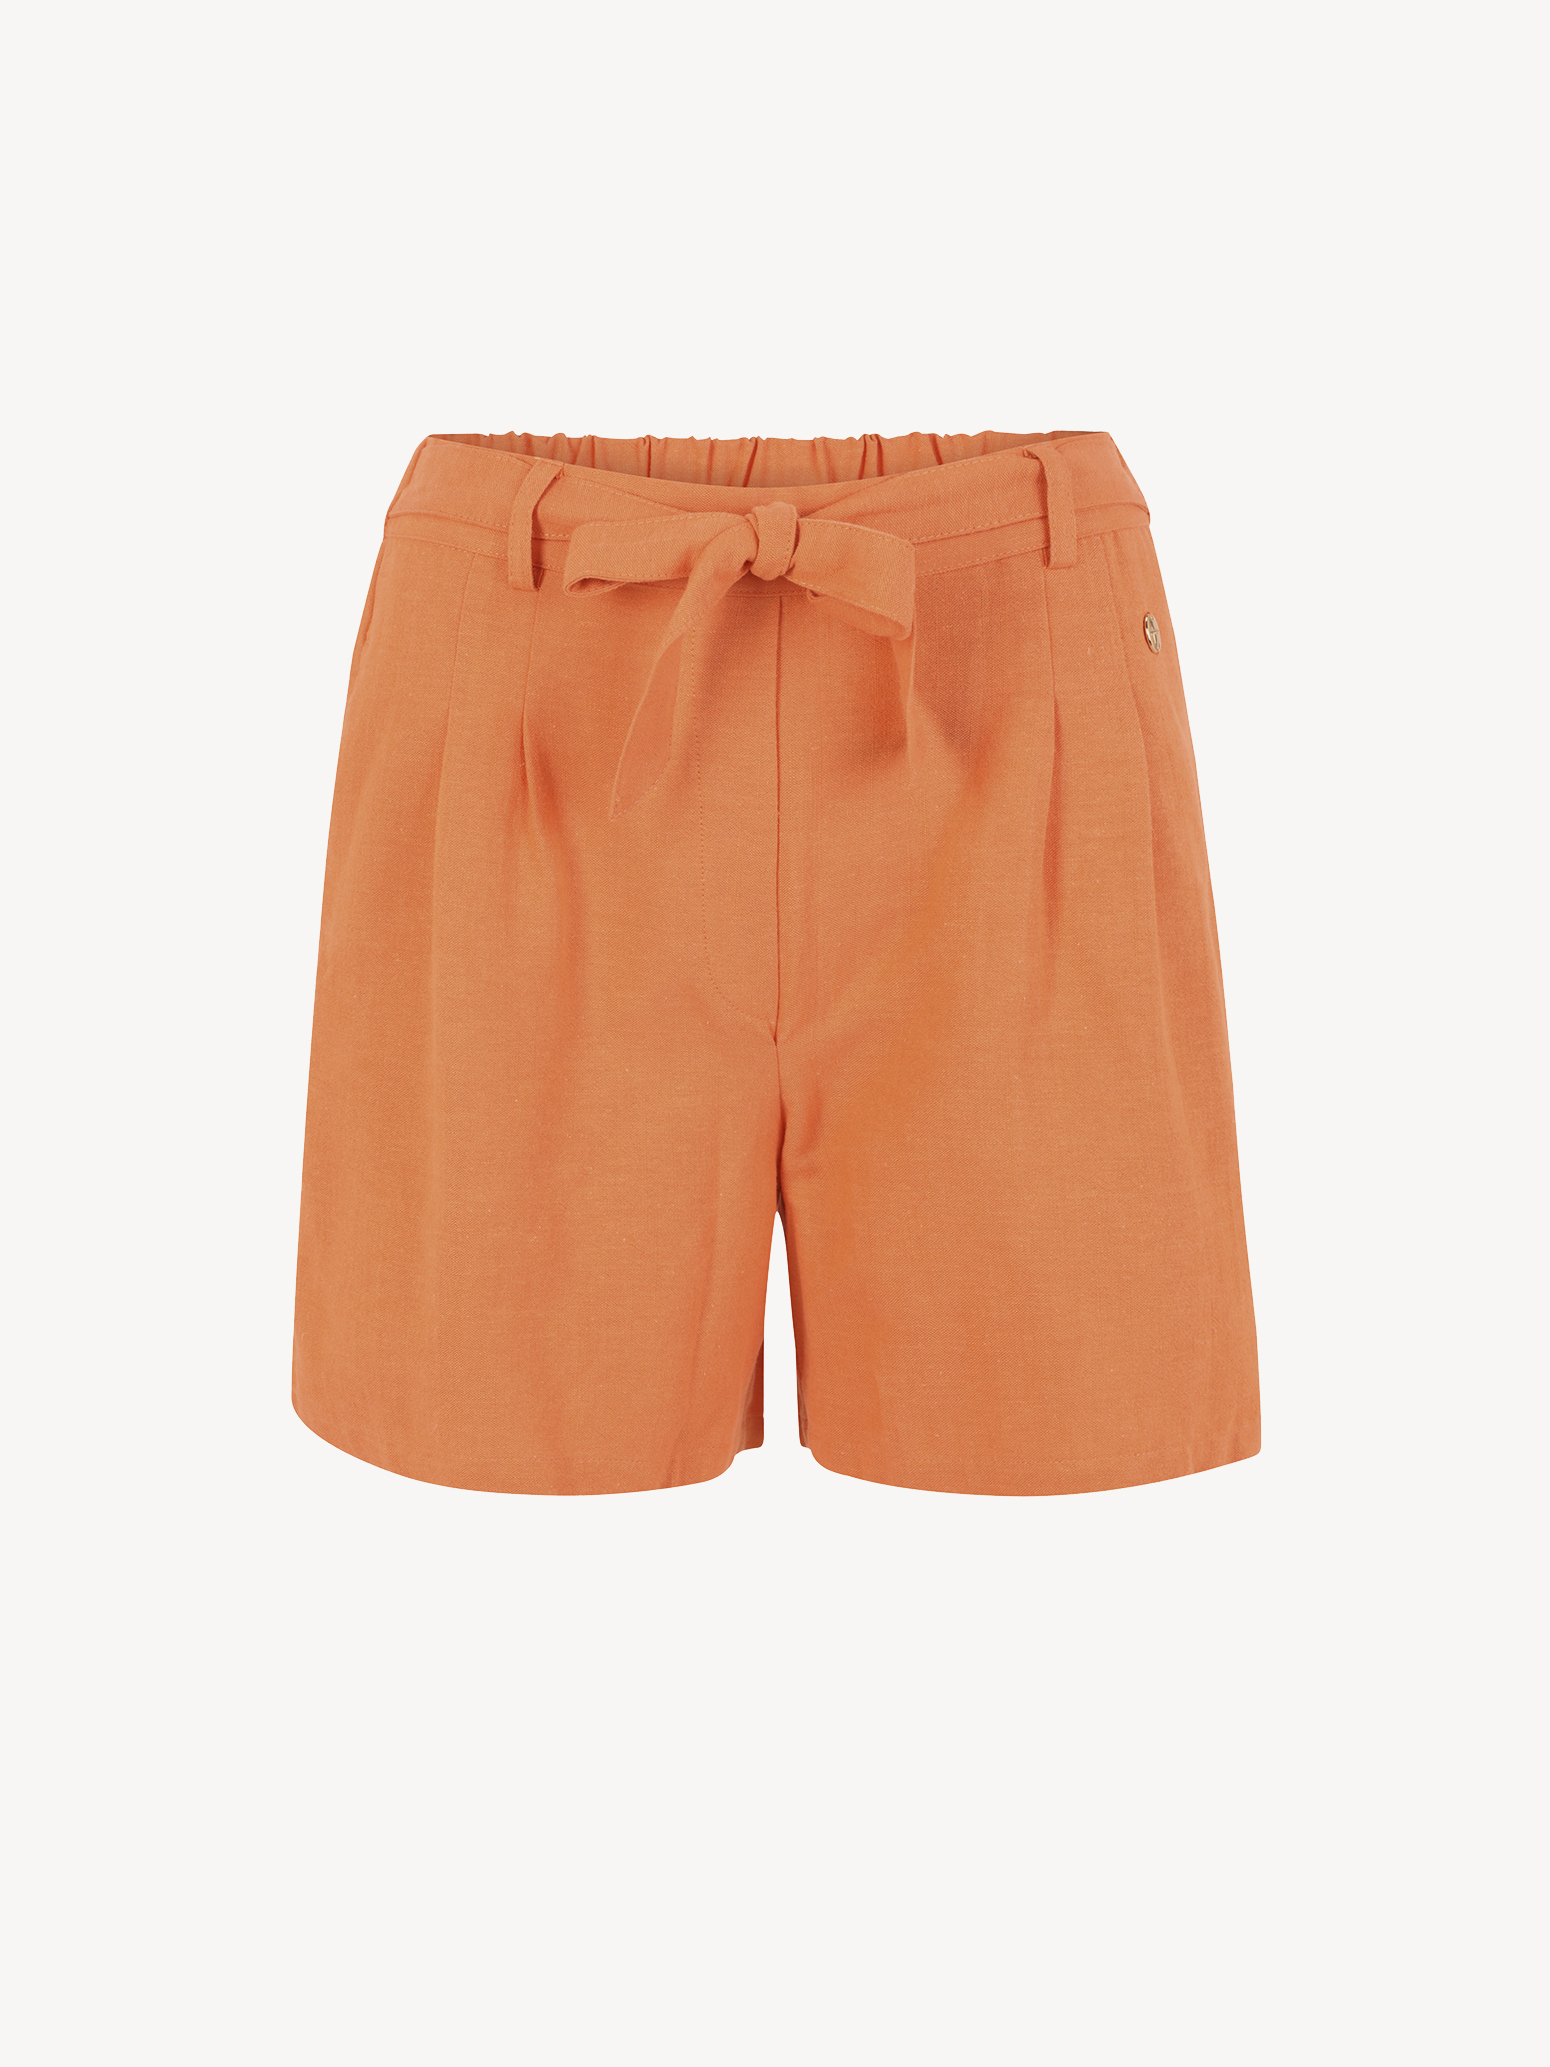 shorts orange - 42